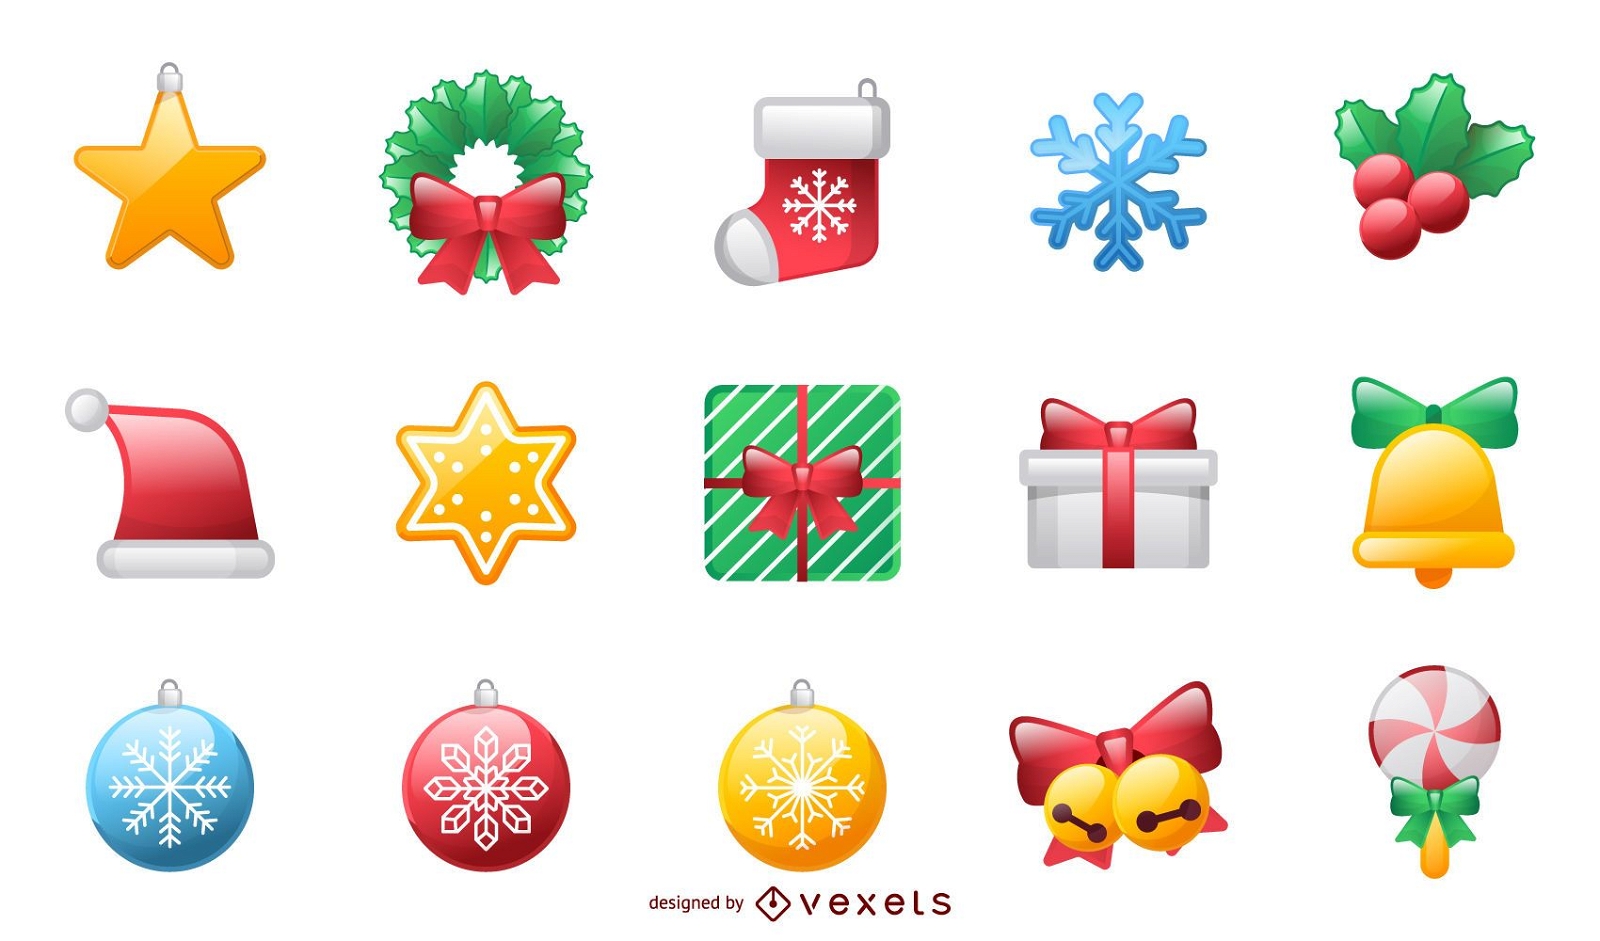 Shiny holiday and Christmas icons